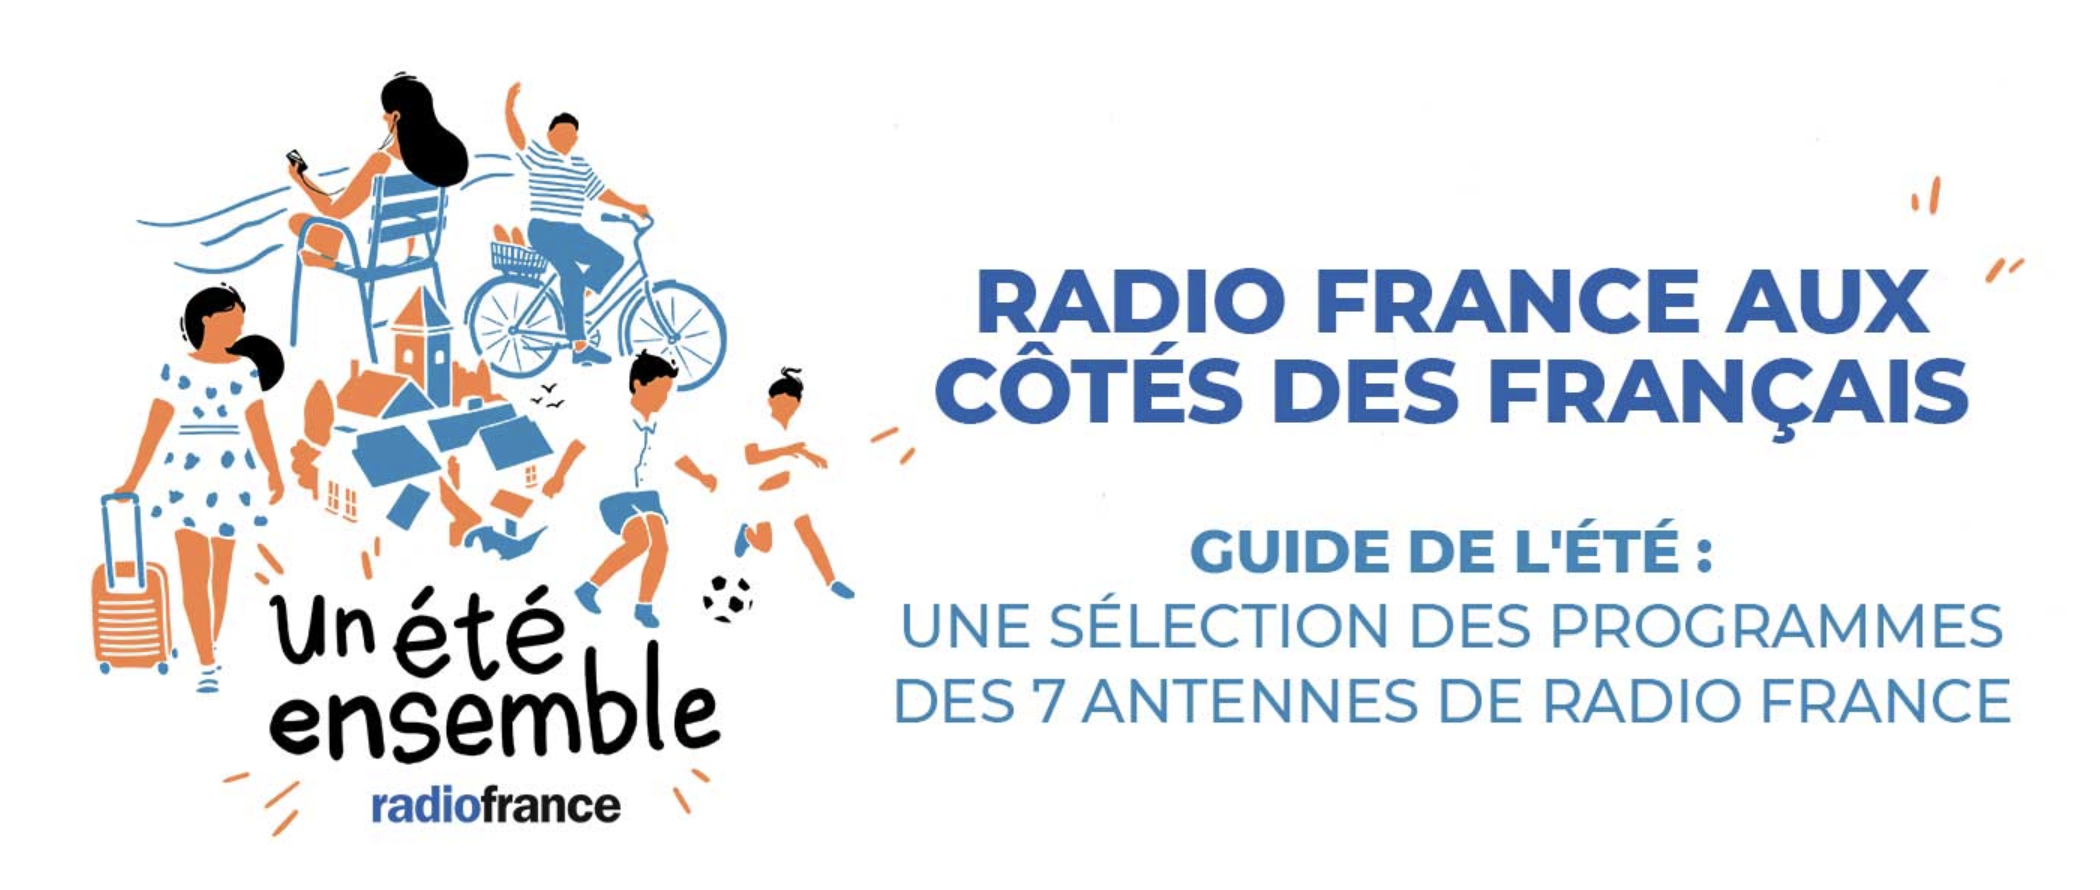 Radio France : un guide de l'été pour être "à côté des Français"